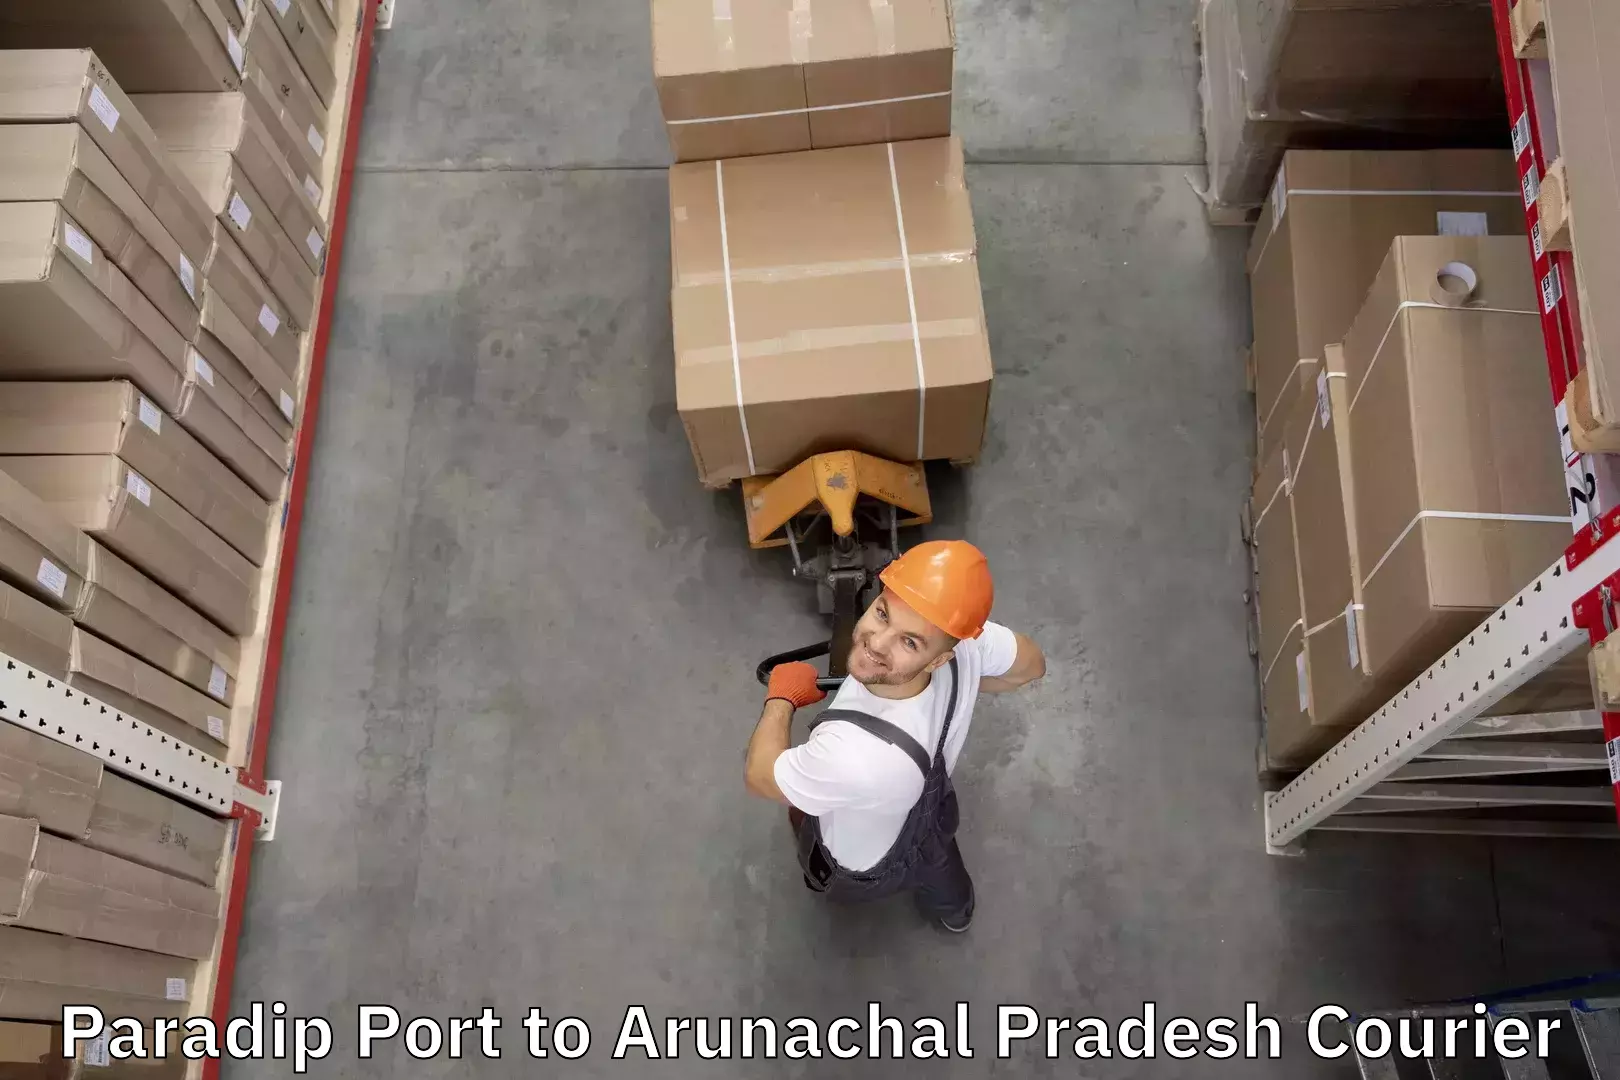 Reliable luggage courier Paradip Port to Arunachal Pradesh